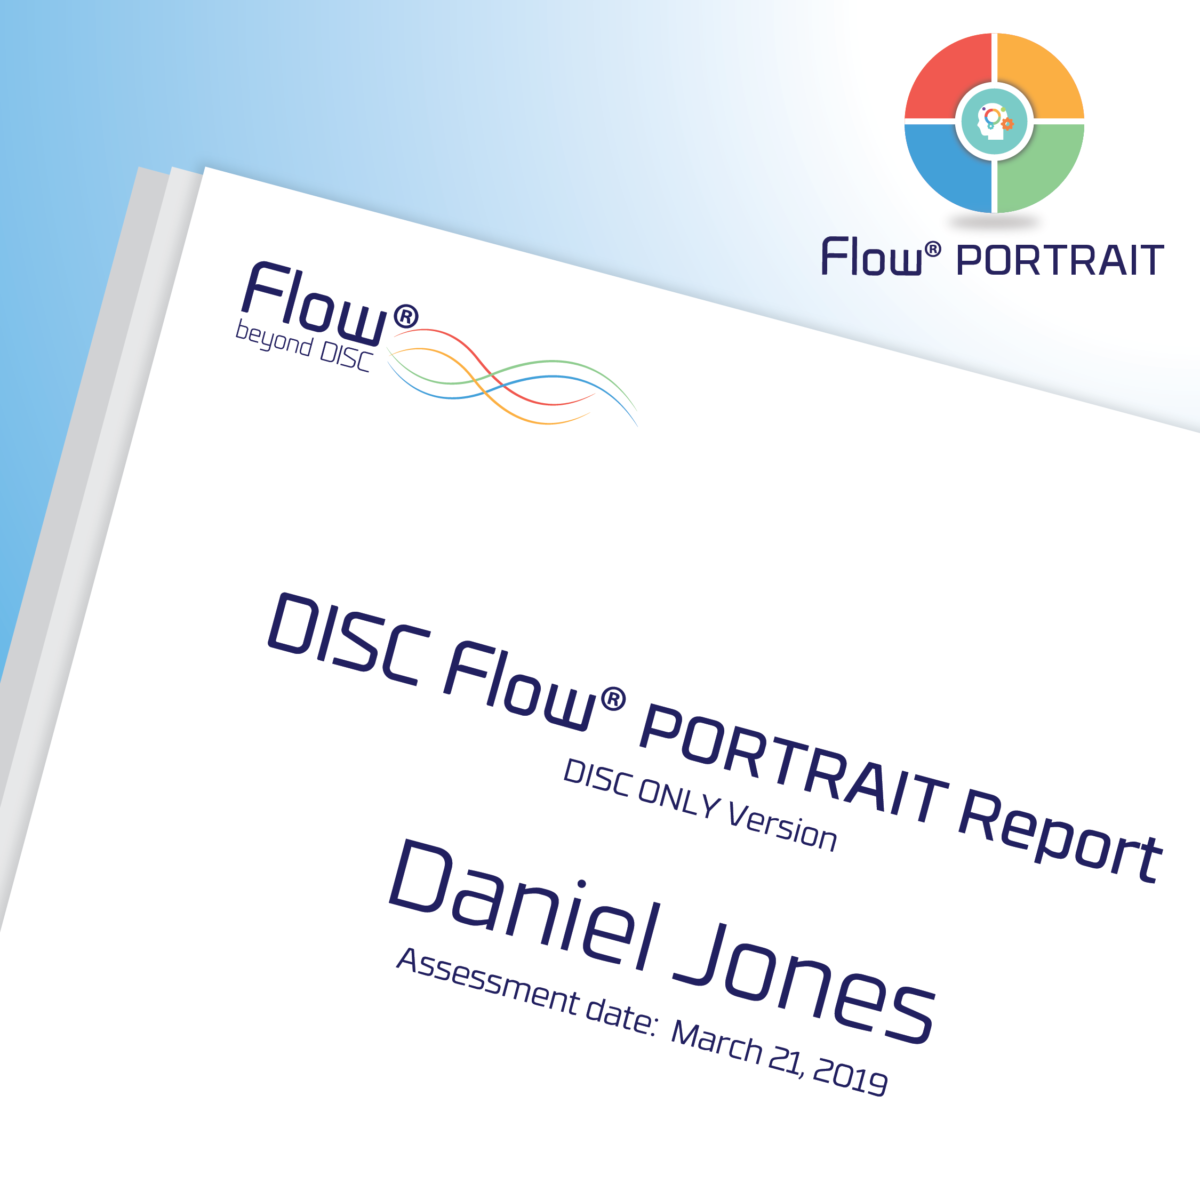 DISC Flow® PORTRAIT Report